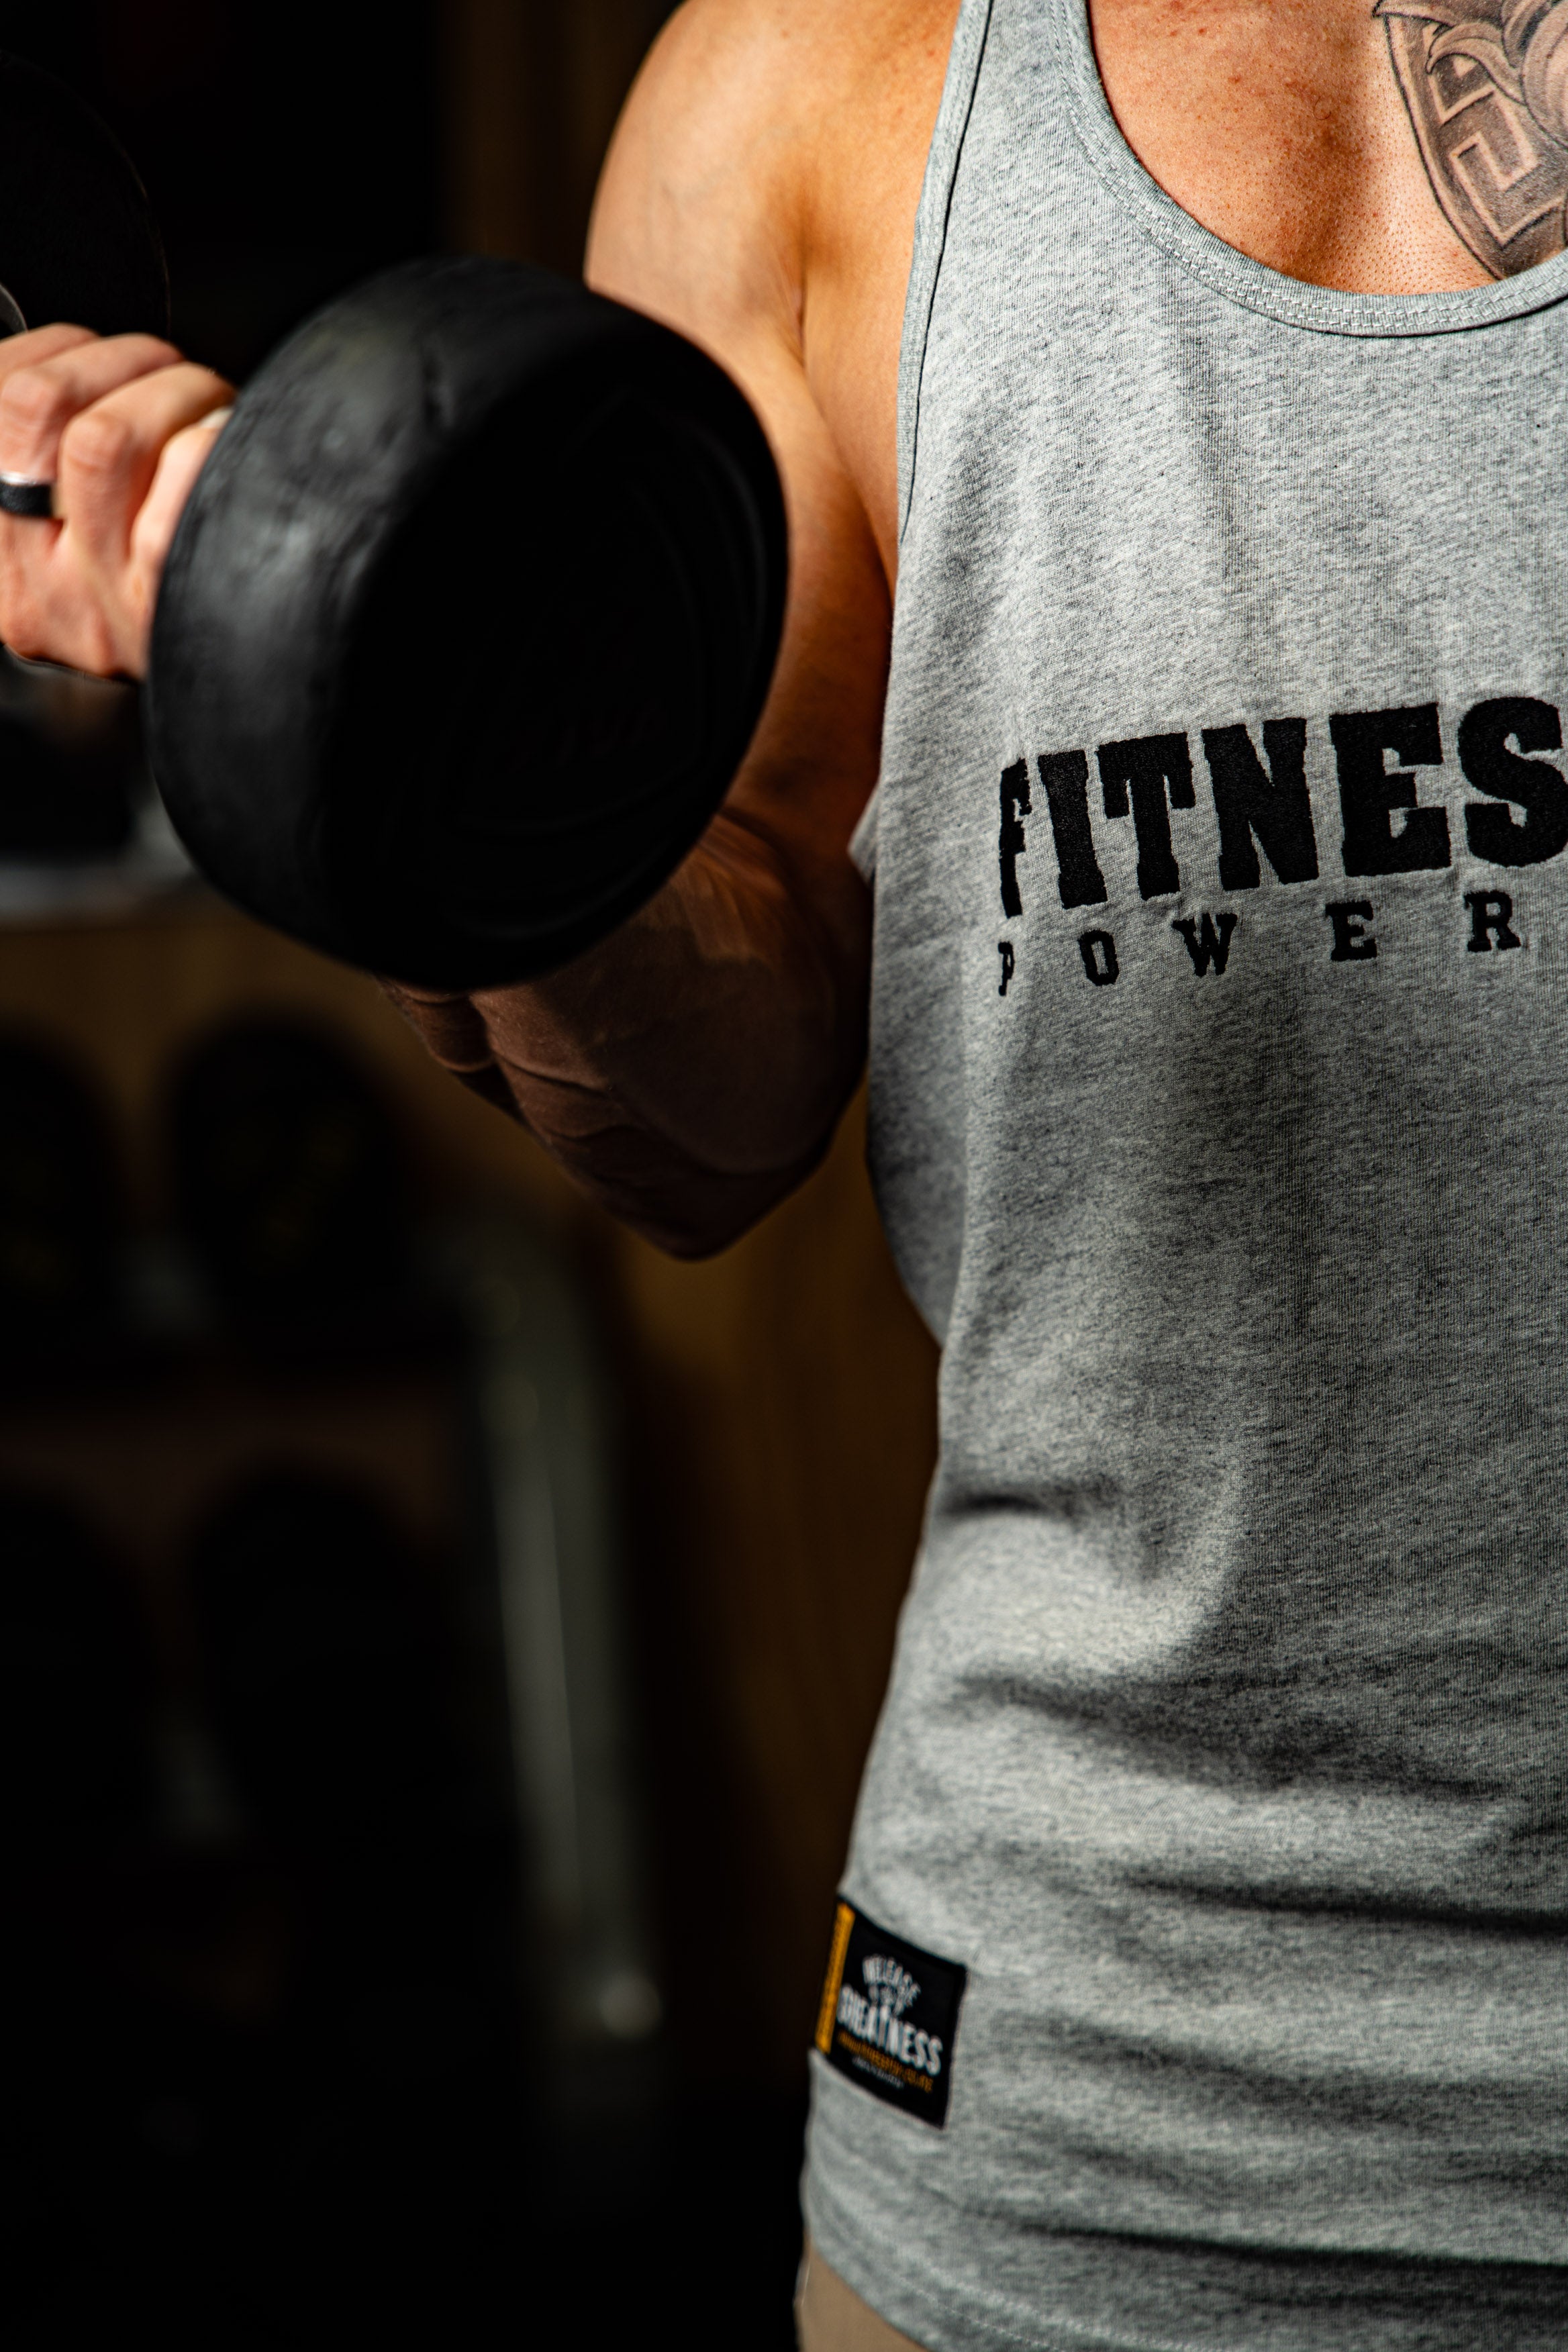 Fitnessfox Muscle Tank Top Singlet ( Grey)